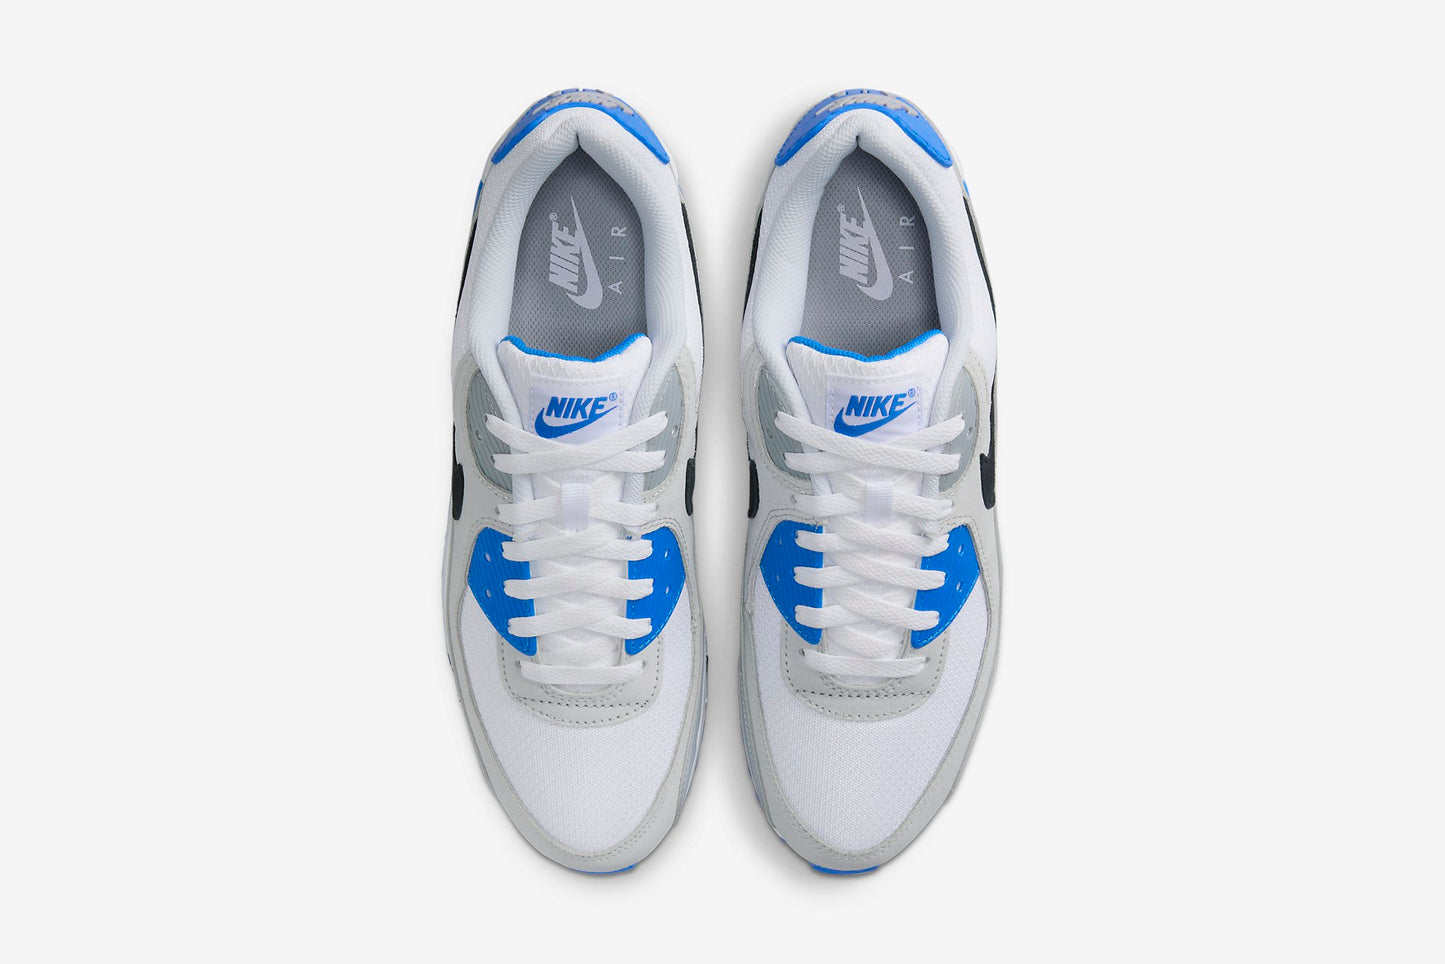 Nike "Air Max 90" M - White / Black / Photo Blue